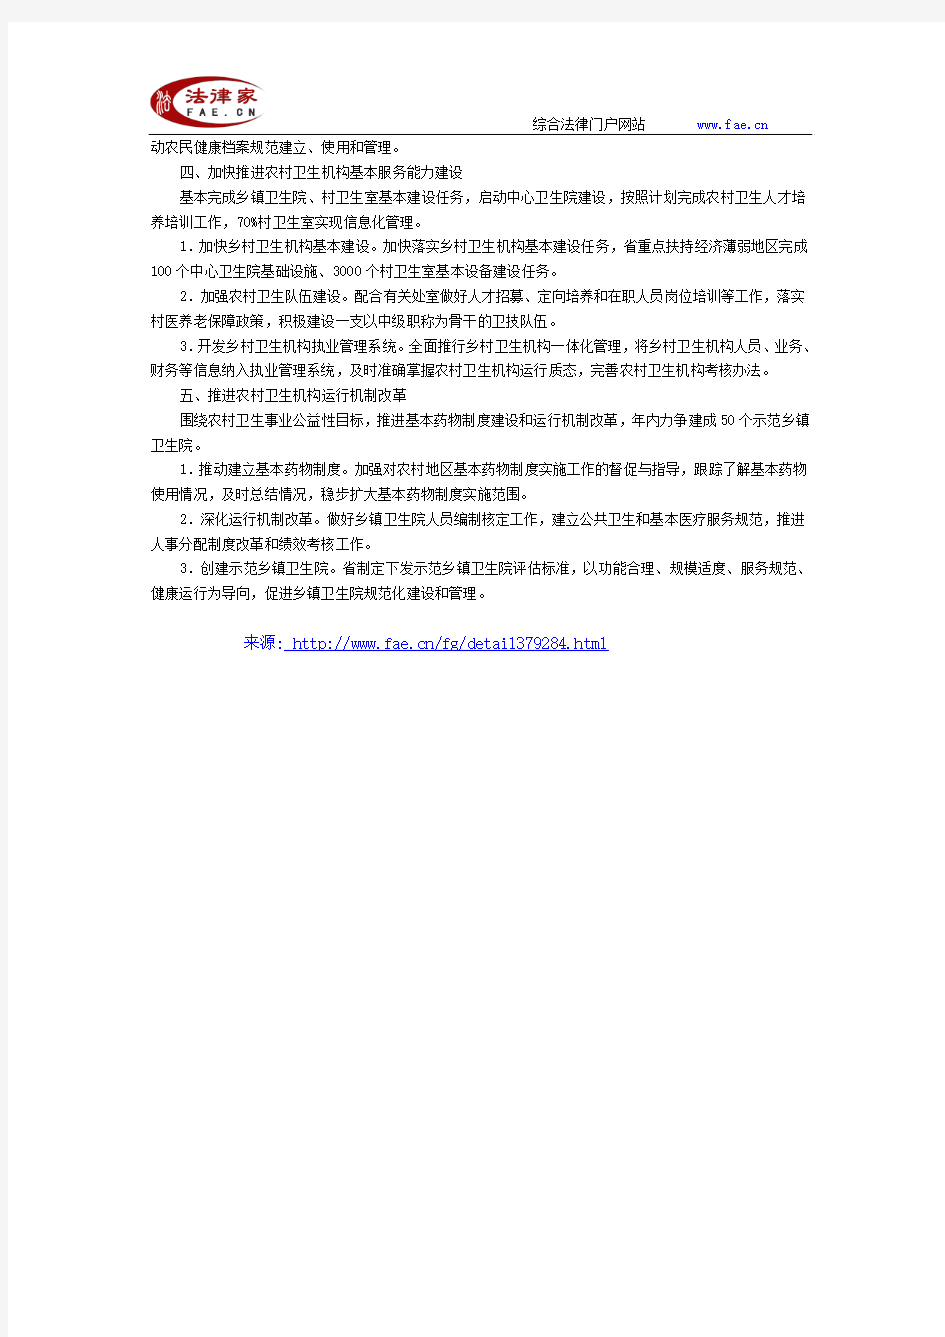 江苏省卫生厅办公室关于印发2010年全省农村卫生工作要点的通知-地方司法规范